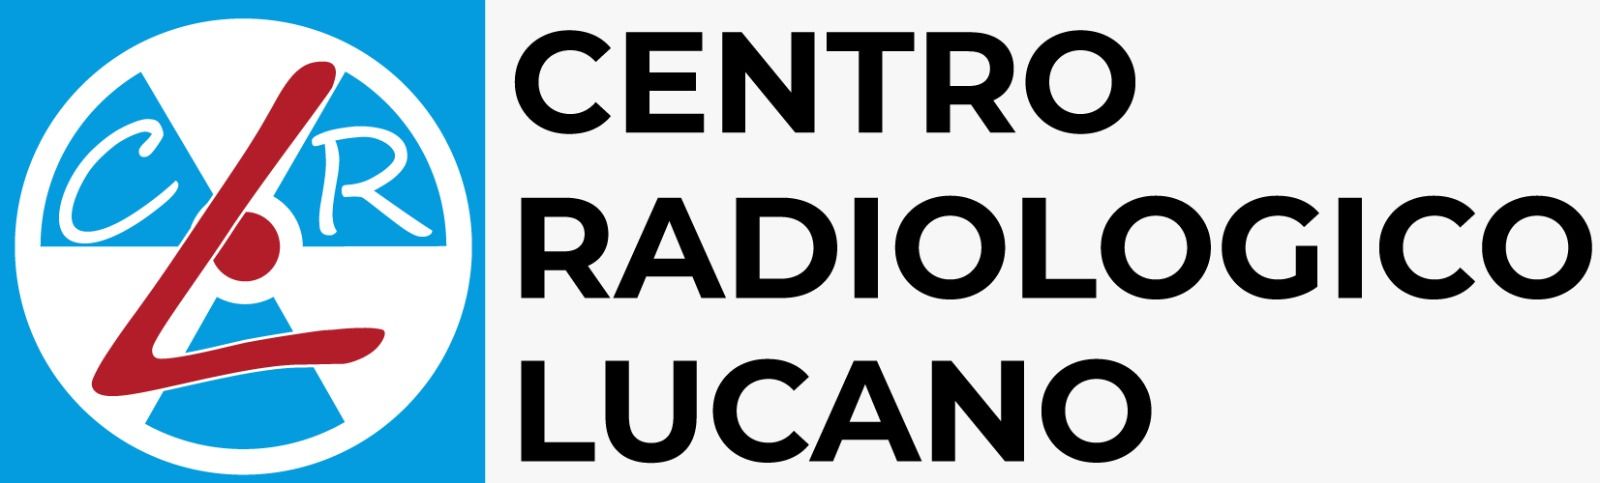 Centro Radiologico Lucano - Logo